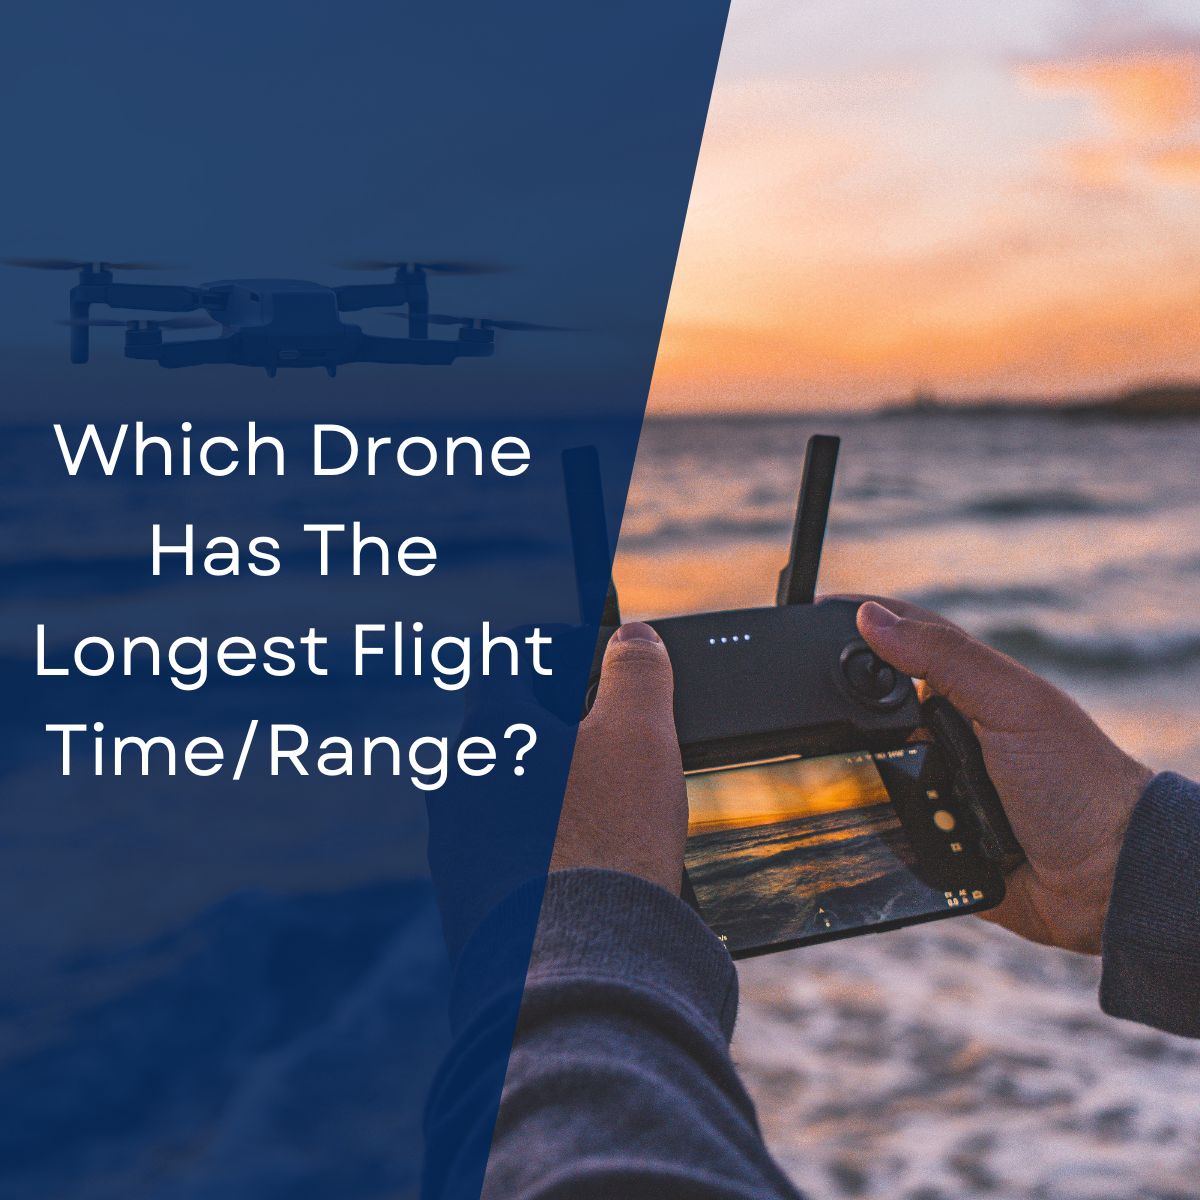 Quel drone a le temps de vol/autonomie le plus long ?